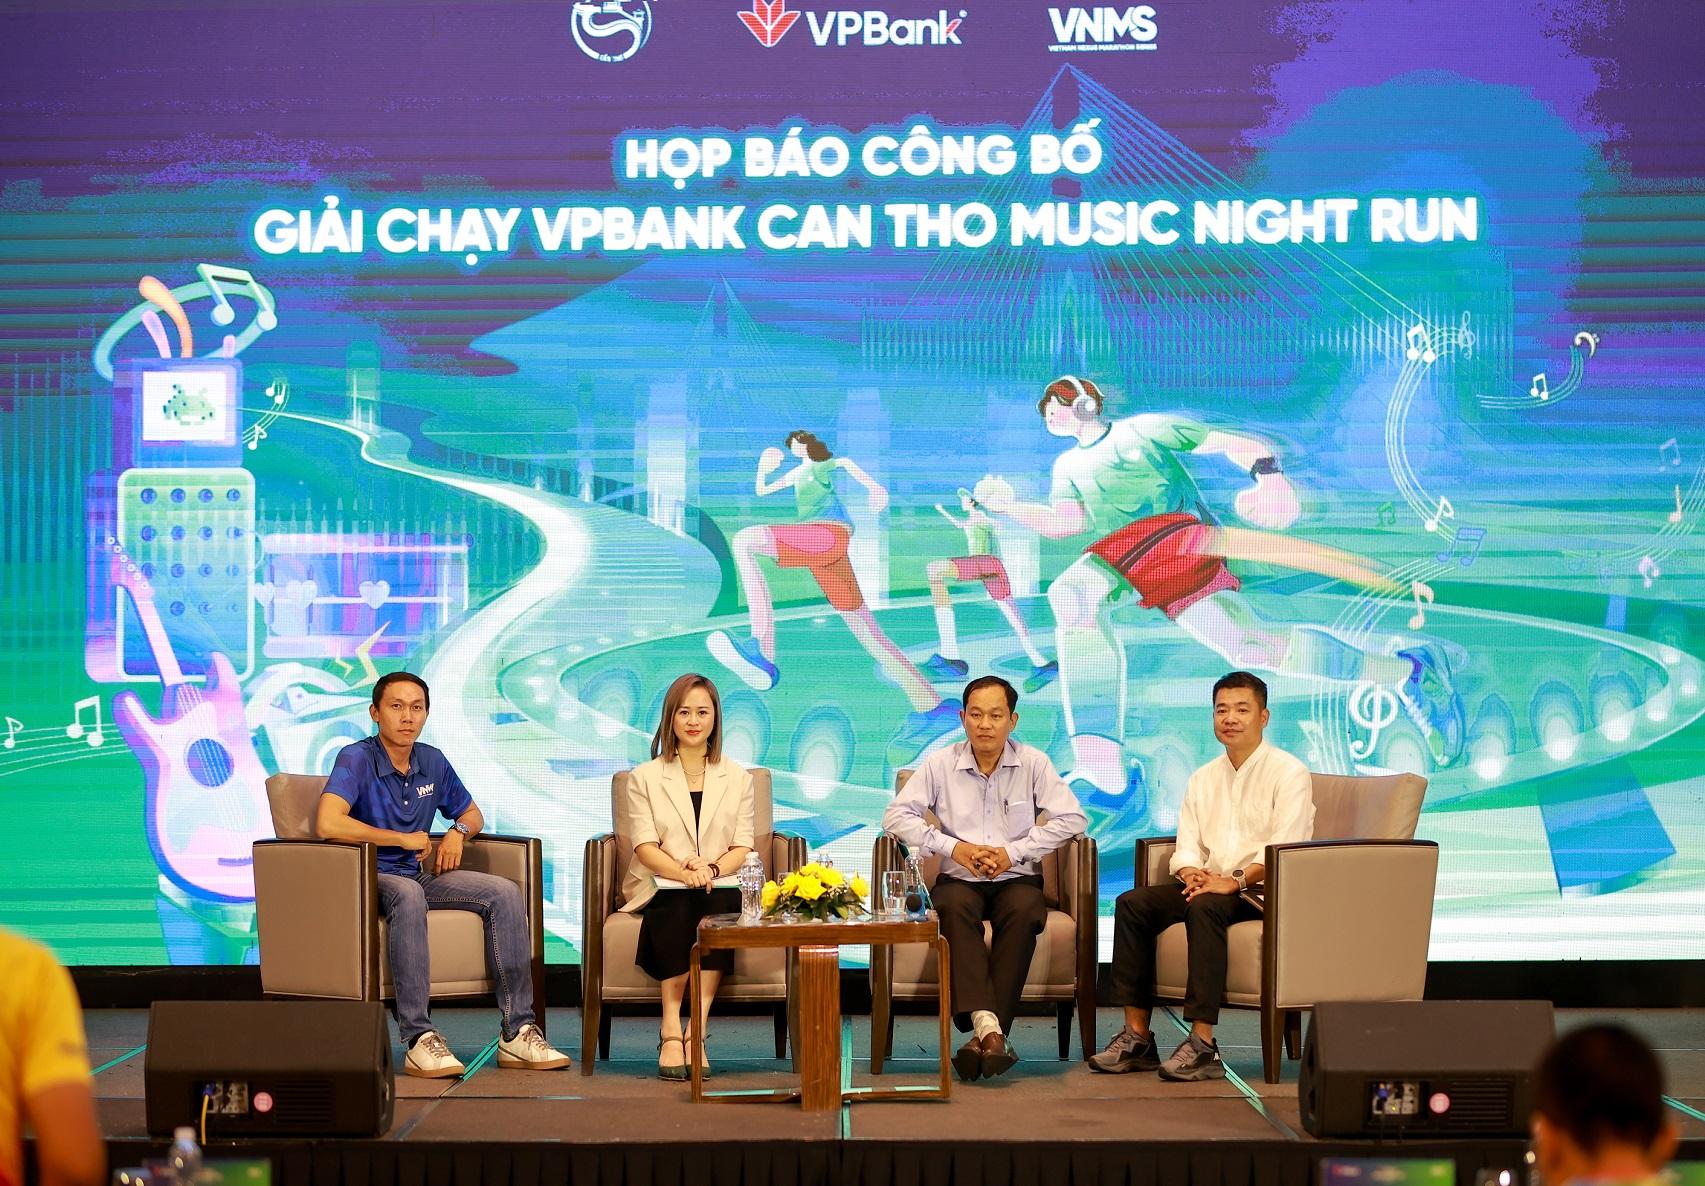 i diện ban tổ chức VPBank Can Tho Music Night Run chia sẻ, giải đáp thông tin về giải đấu (2)